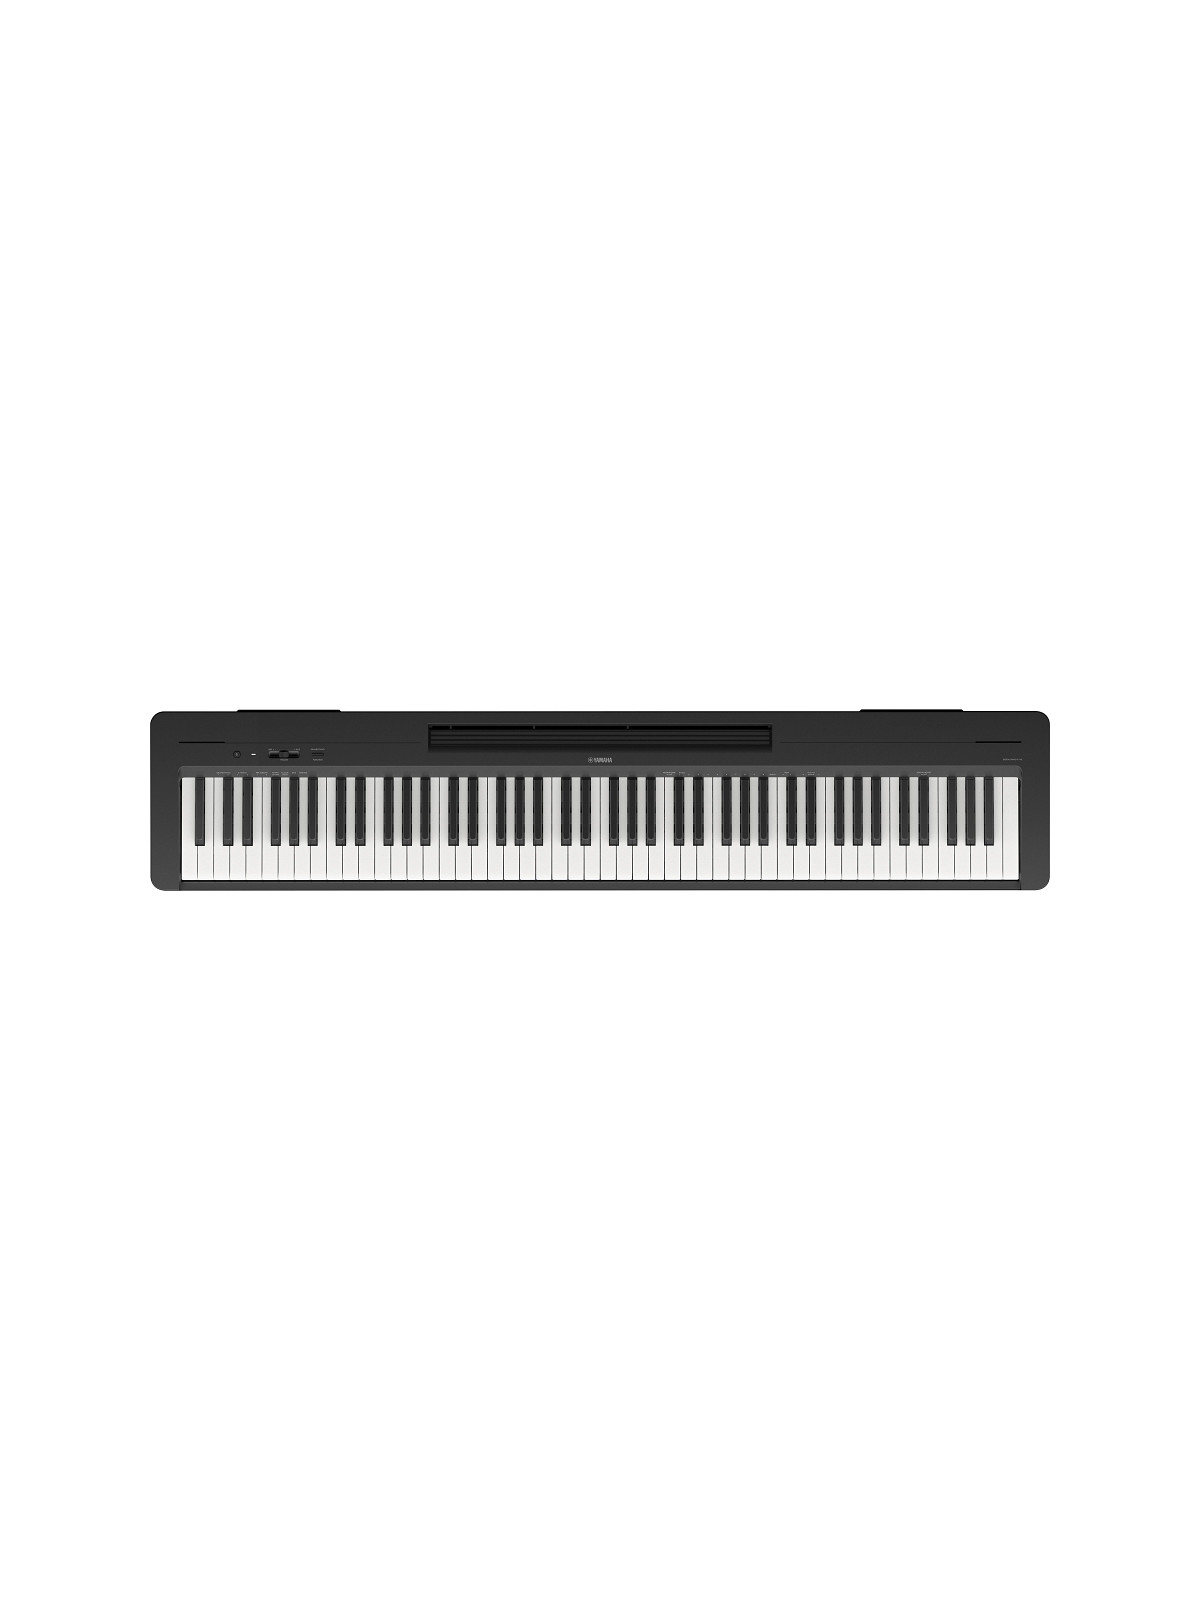 Piano Numérique Yamaha P-145B Black

Un fantastique piano numérique à un prix incroyable.